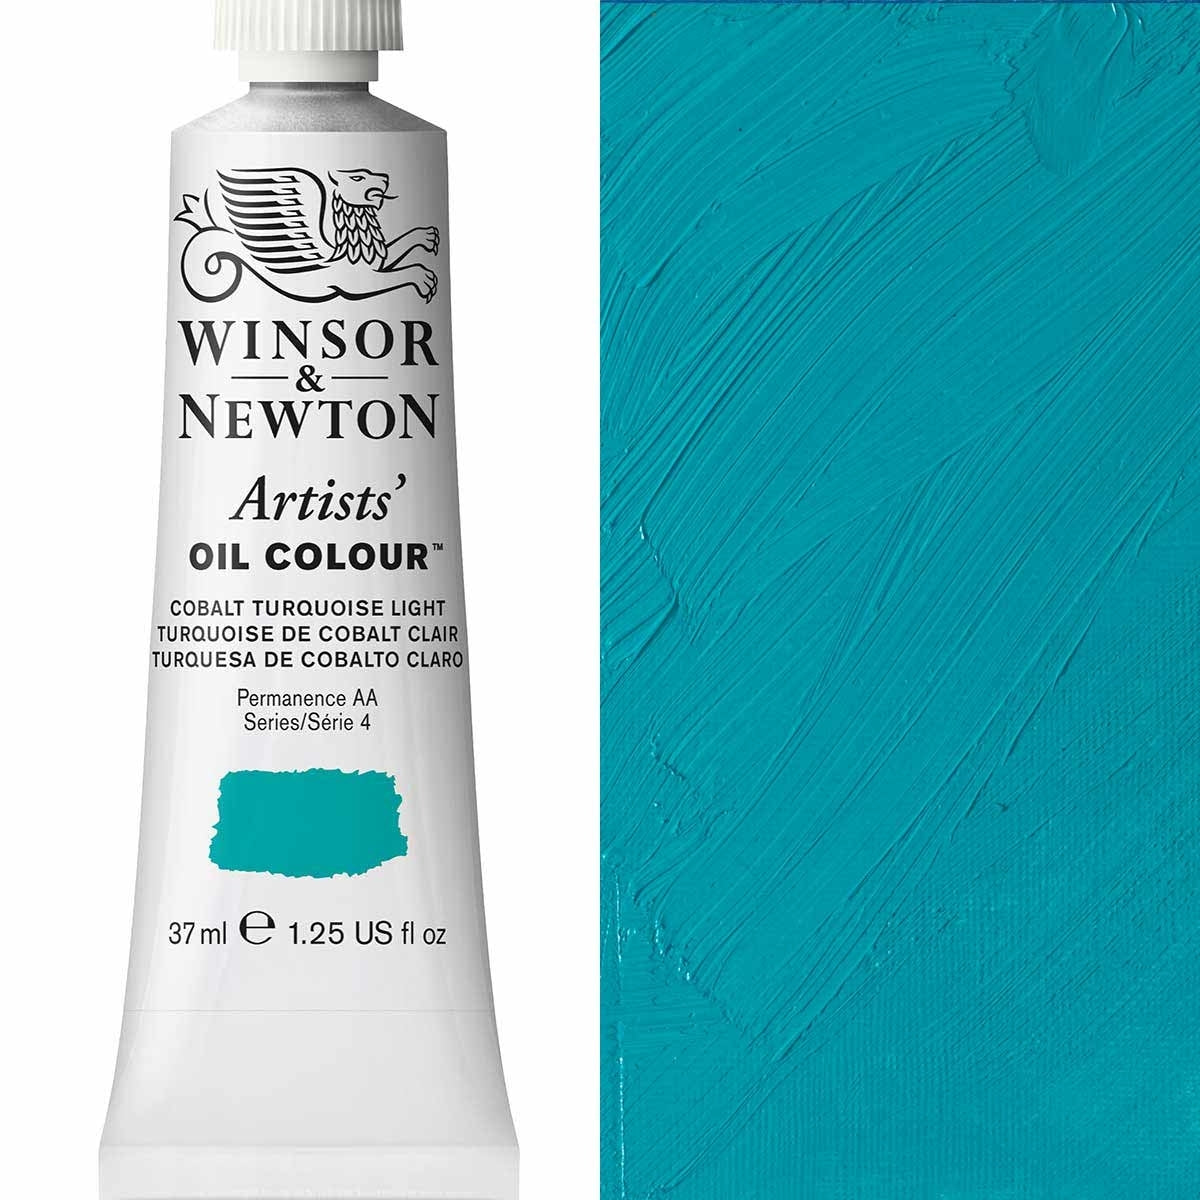 Winsor and Newton - Colore olio degli artisti - 37 ml - Luce turchese Cobalt